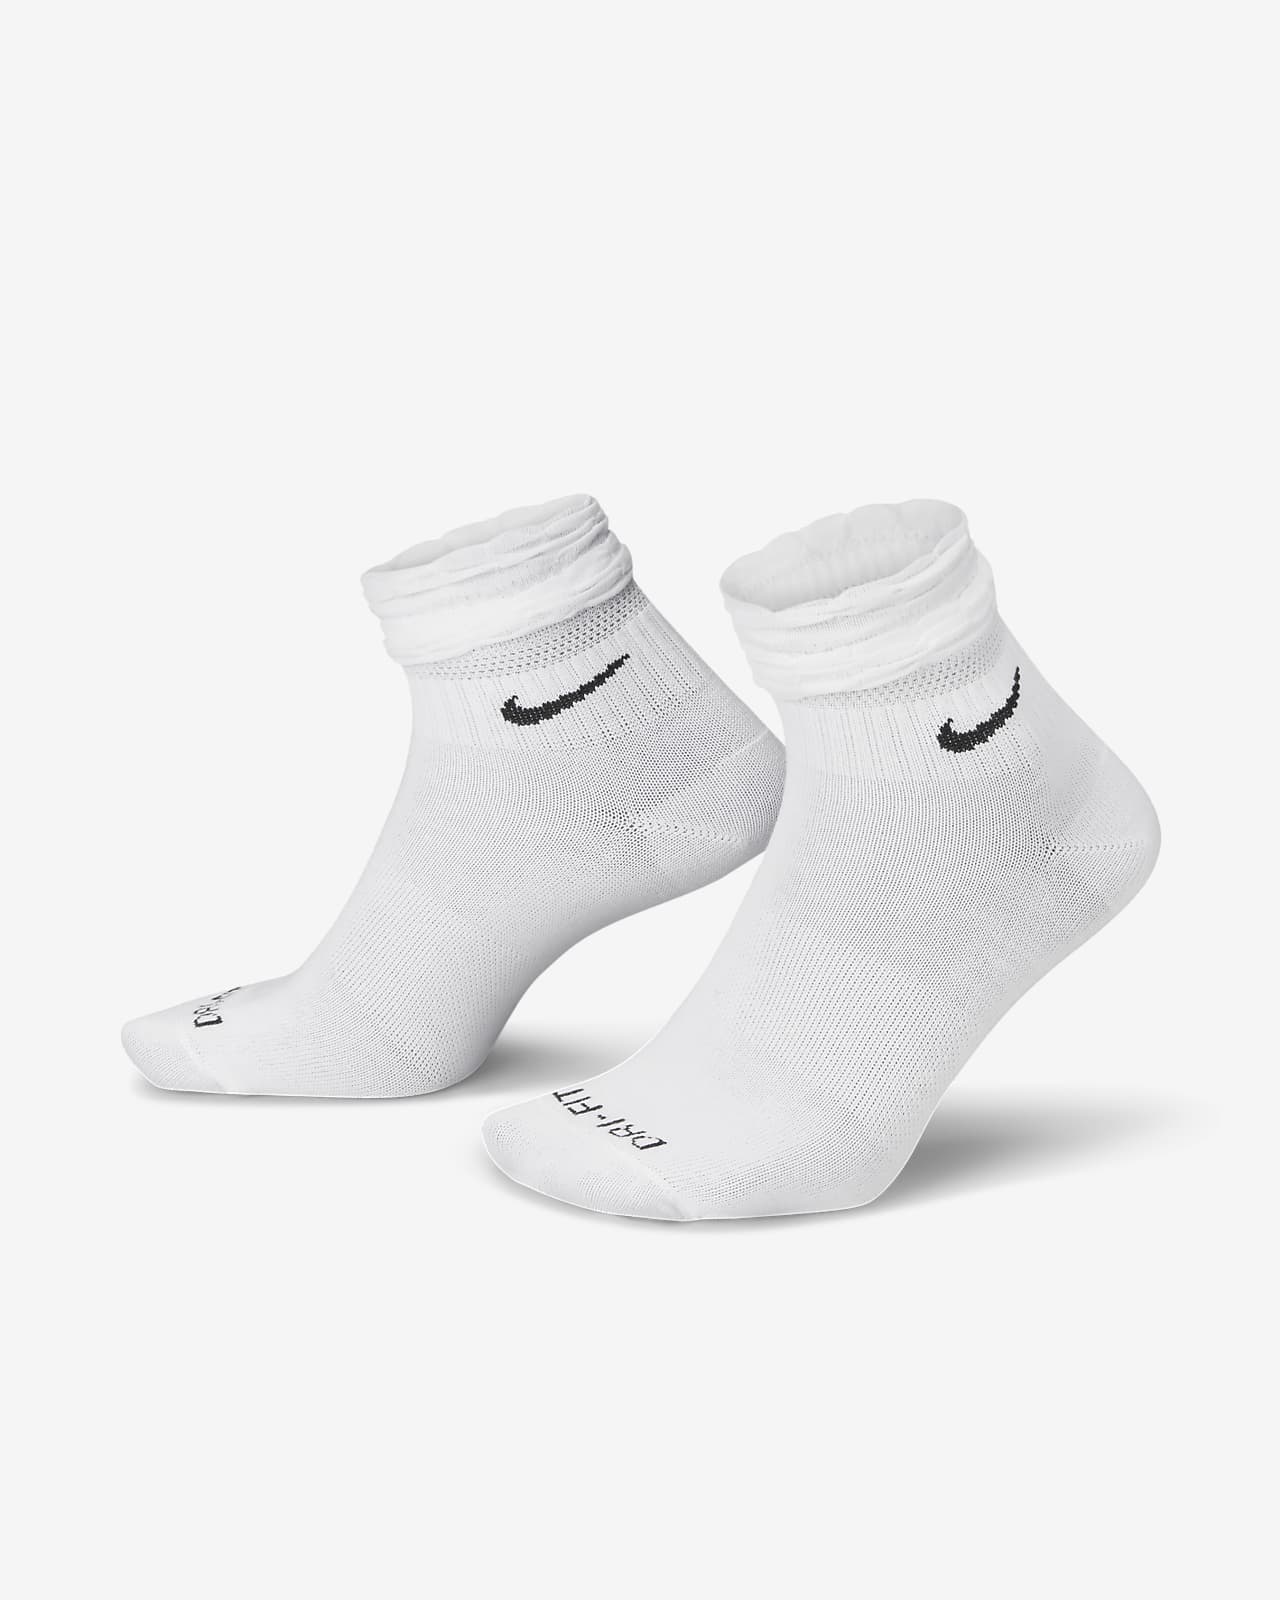 spion patroon ontwerper Nike Everyday Training Ankle Socks. Nike PH